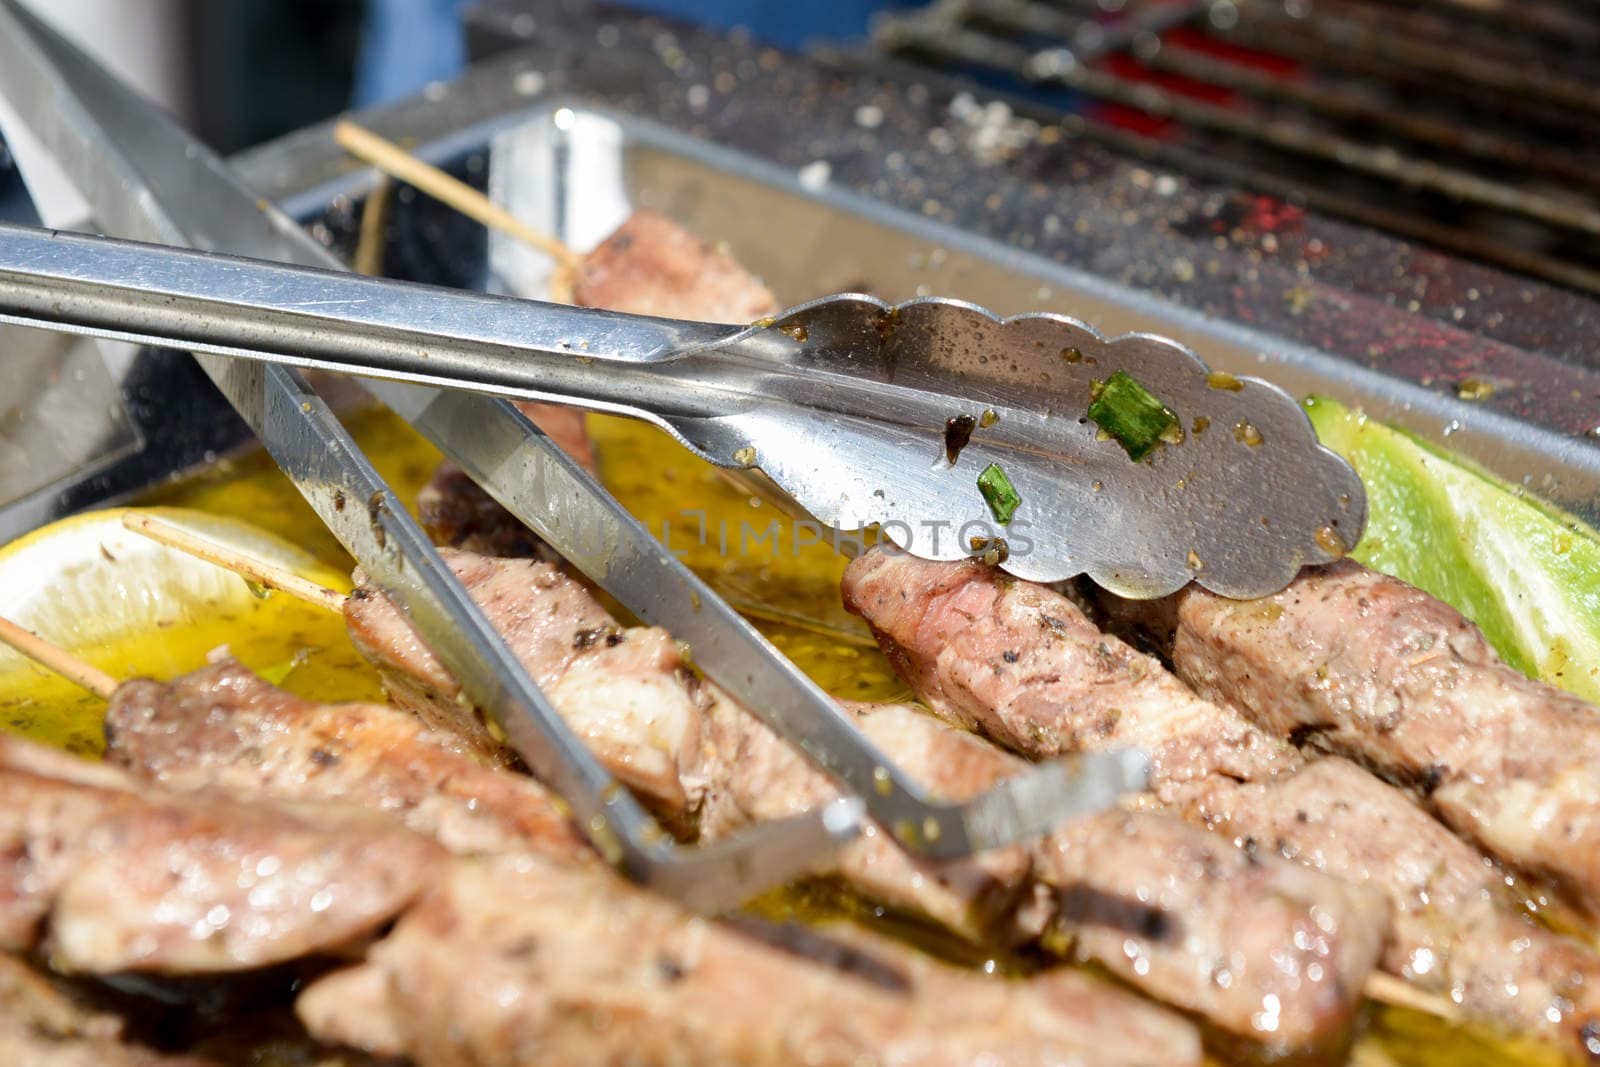 Juicy roasted kebabs on the metal tray by vlaru